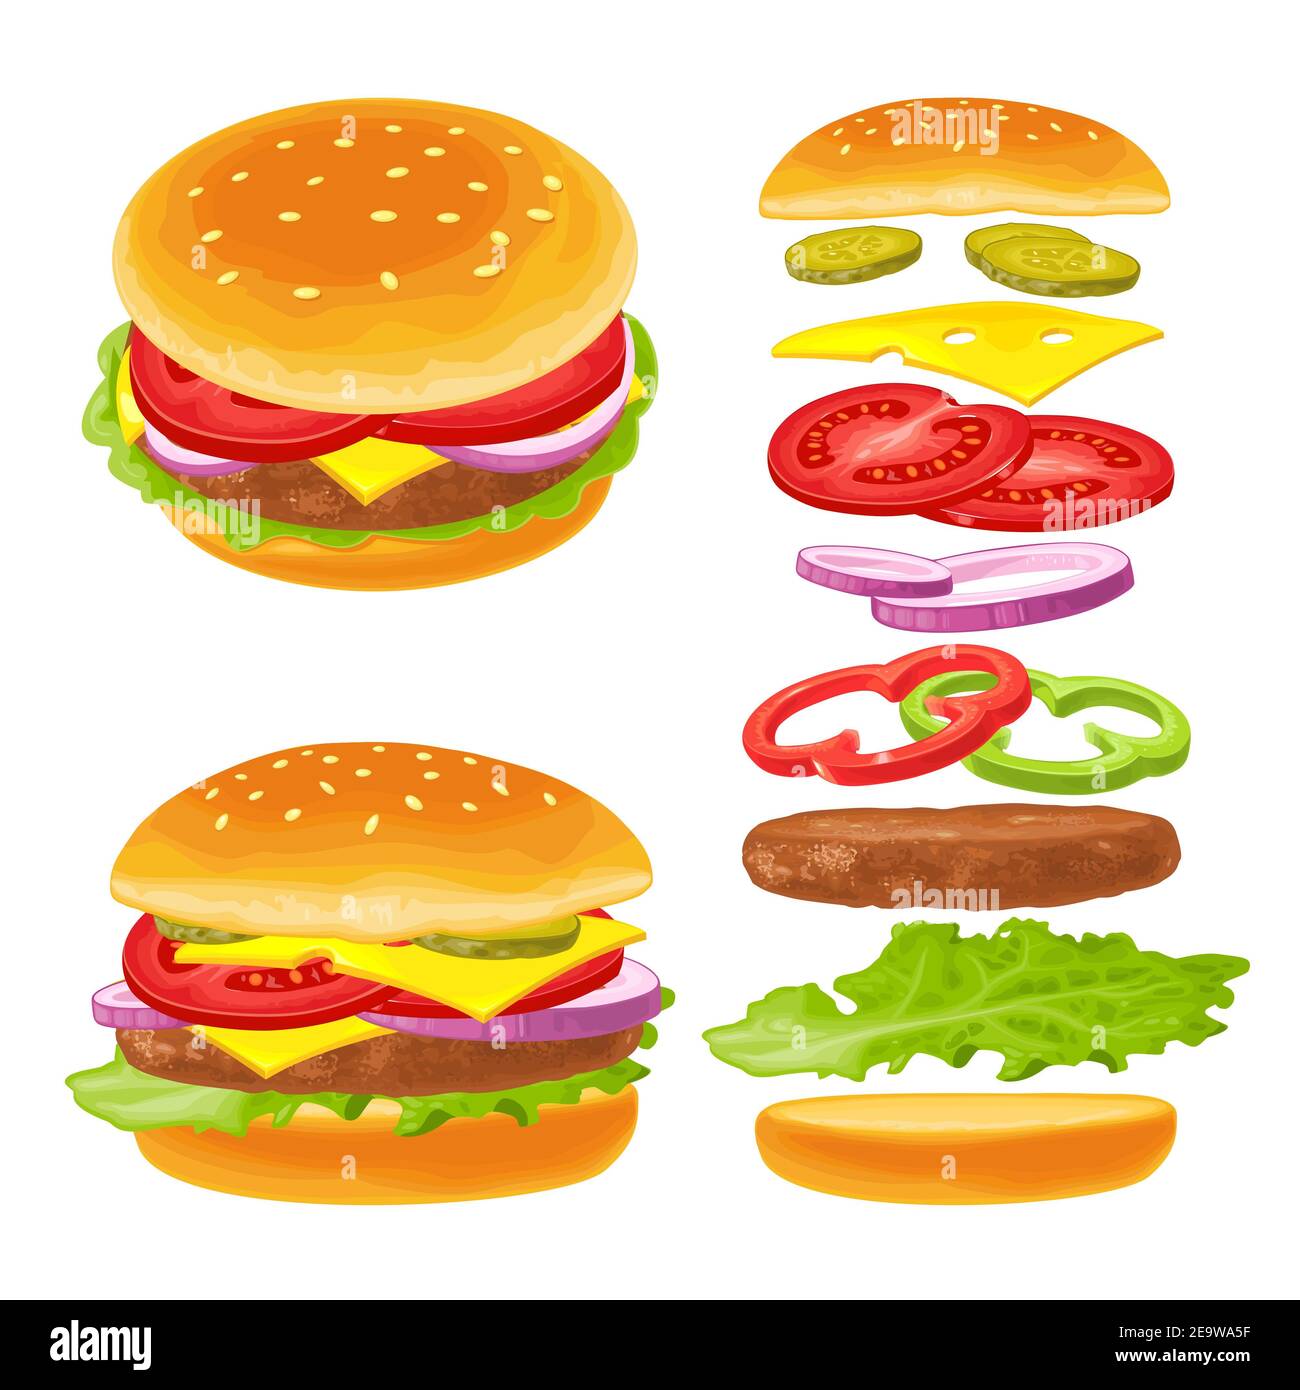 Le hamburger avec ingrédients volants comprend un pain, une tomate, une salade, du fromage, de l'oignon et du concombre. Illustration vectorielle couleur plate isolée sur fond blanc. Banque D'Images